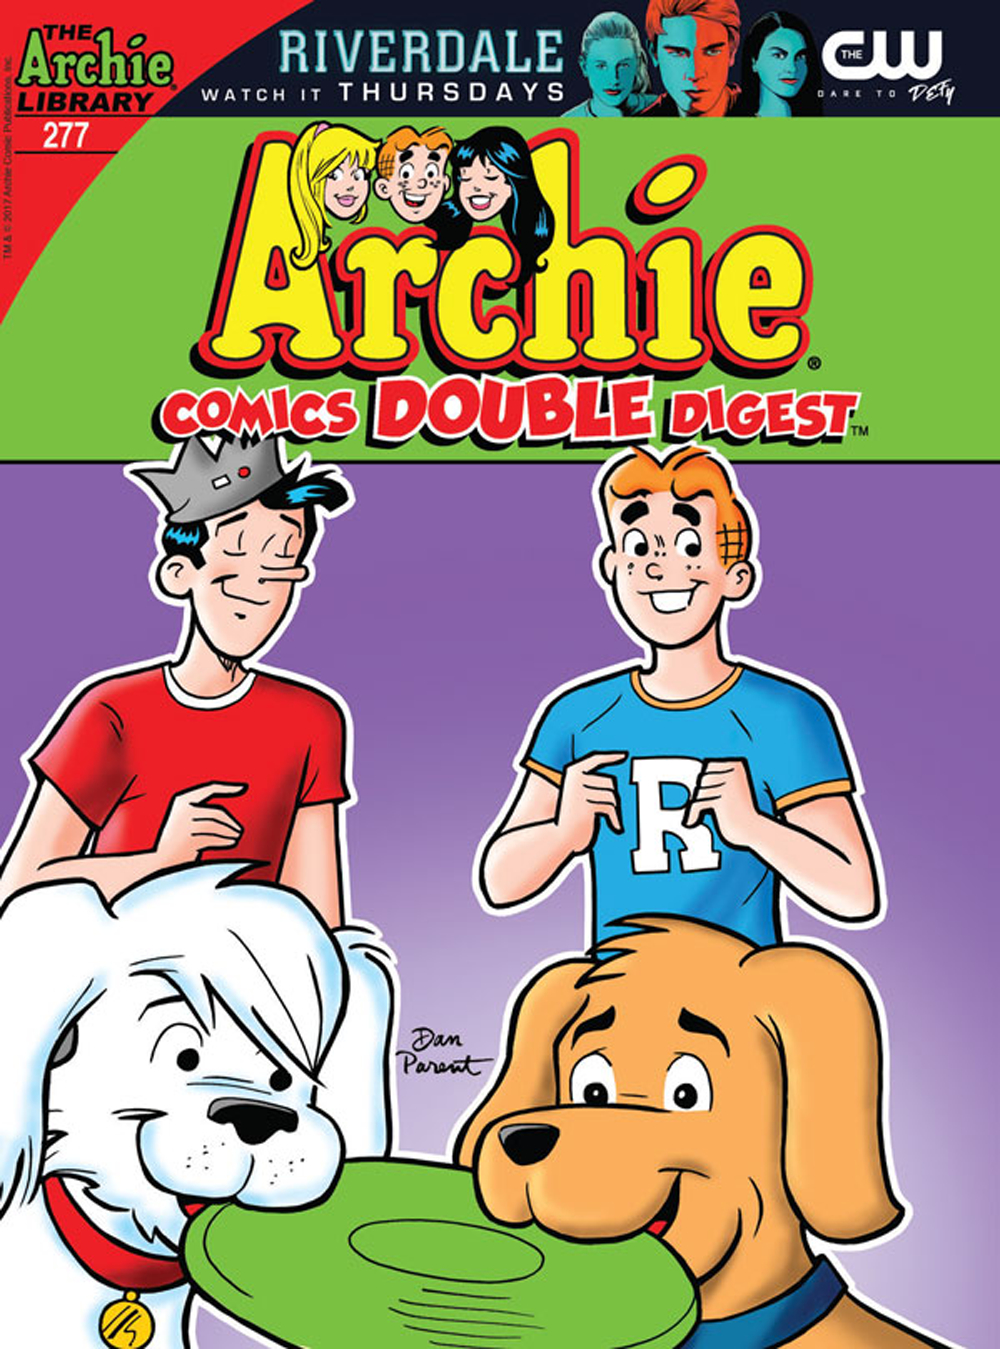 ARCHIE COMICS DOUBLE DIGEST #277